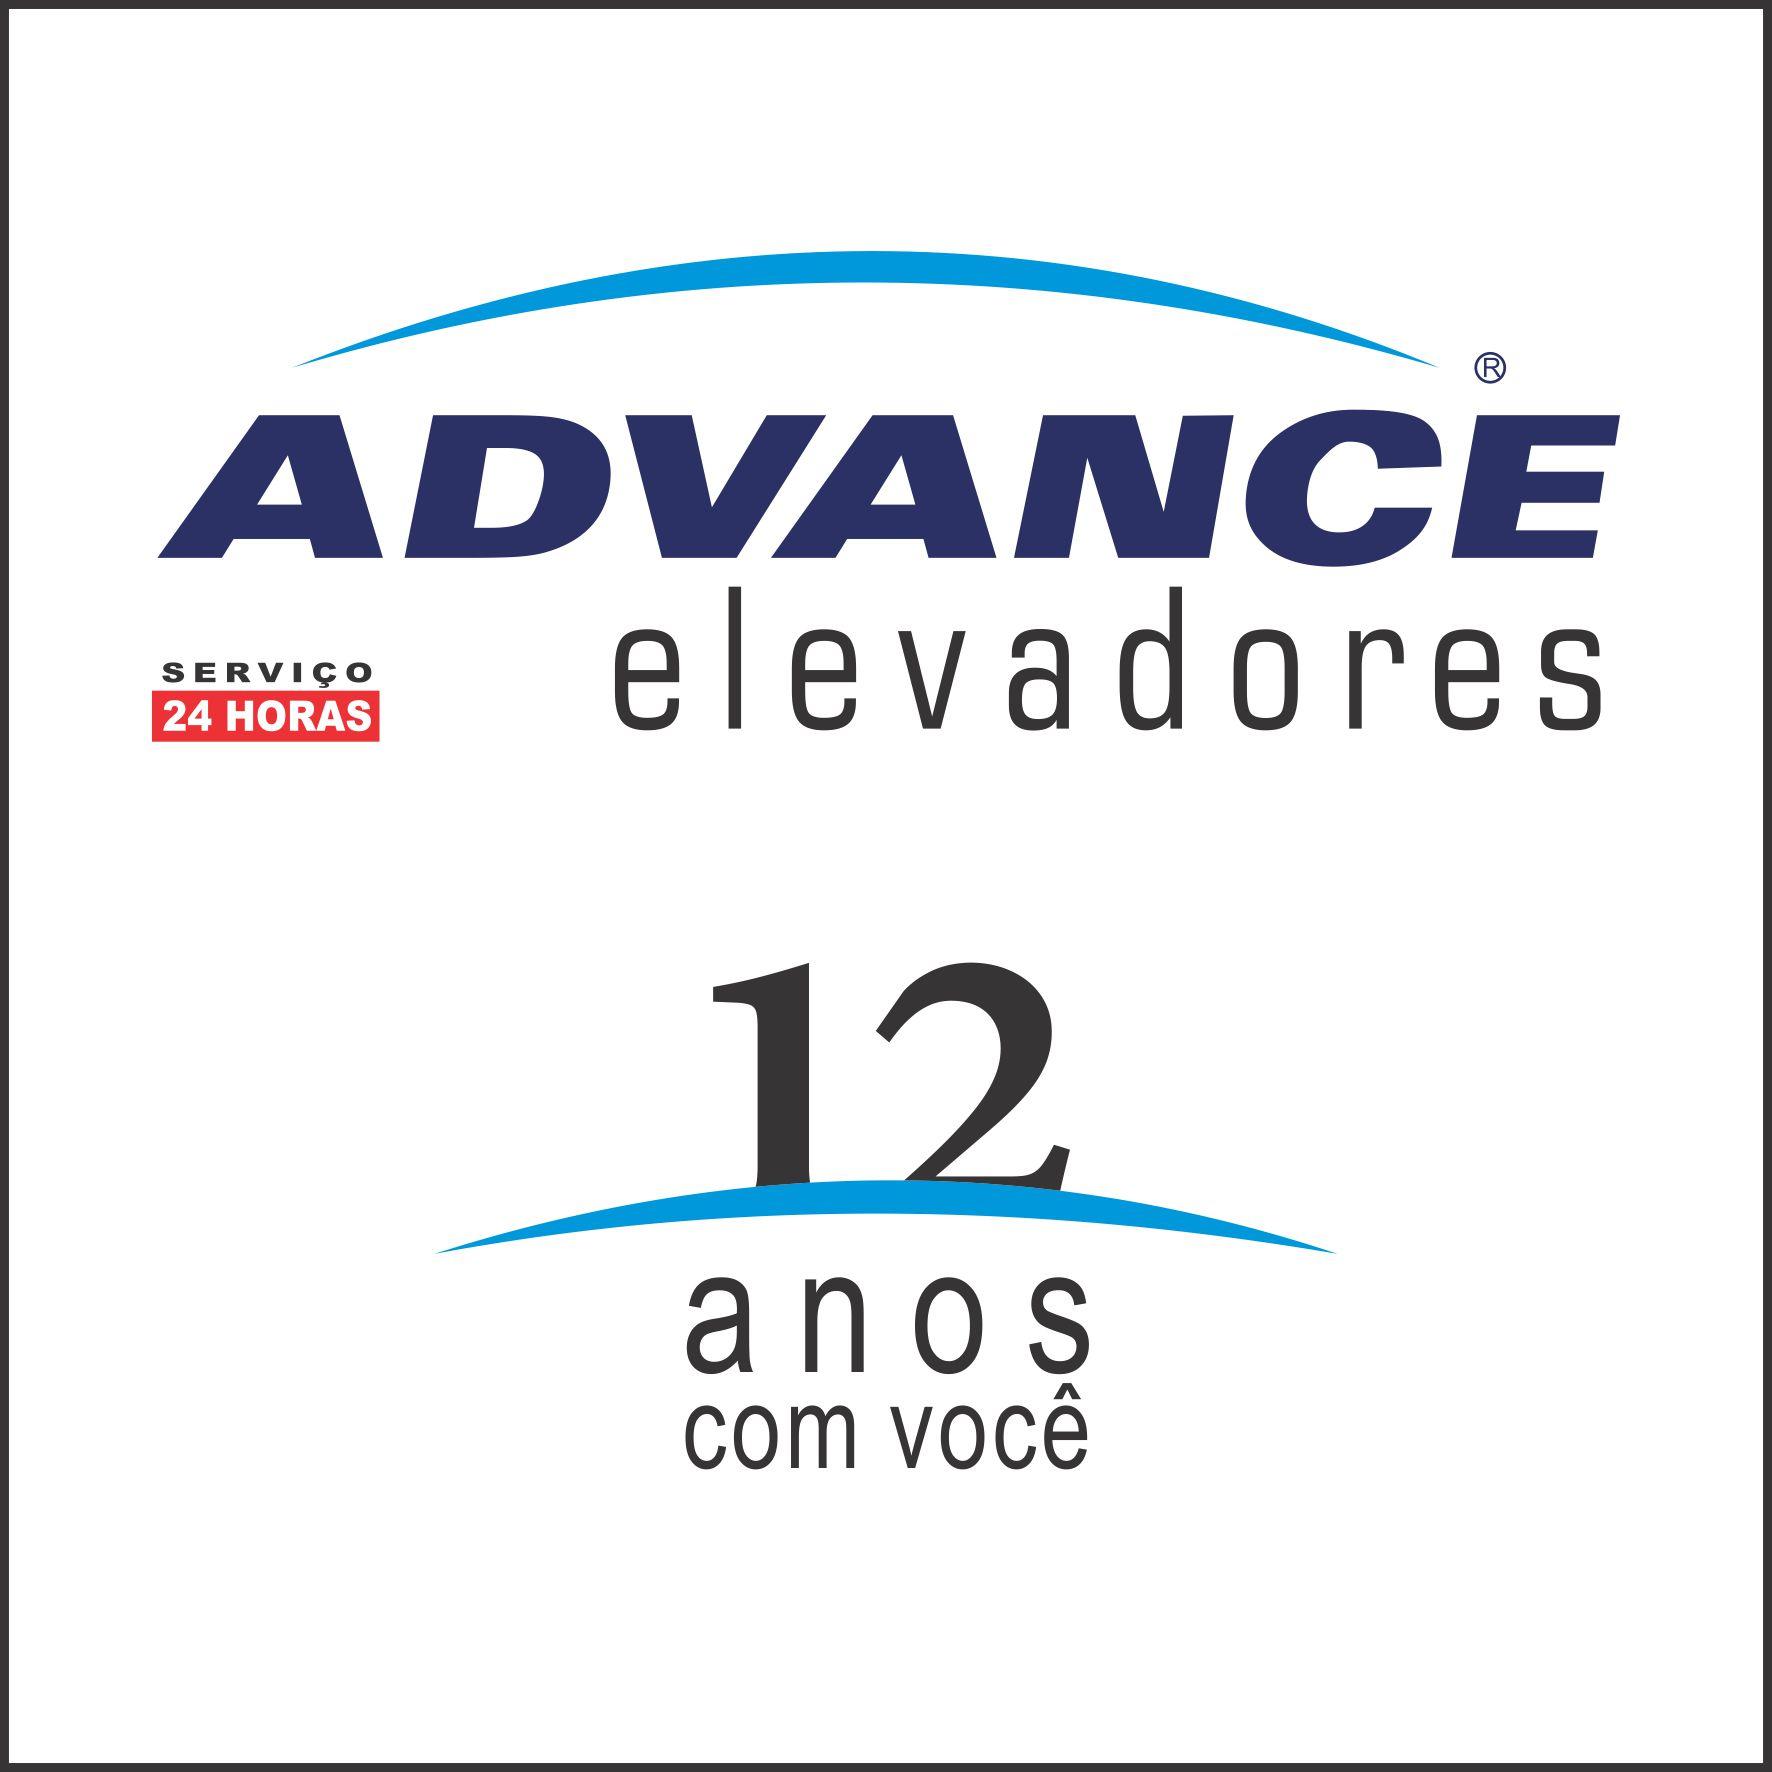 ADVANCE ELEVADORES PORTO ALEGRE